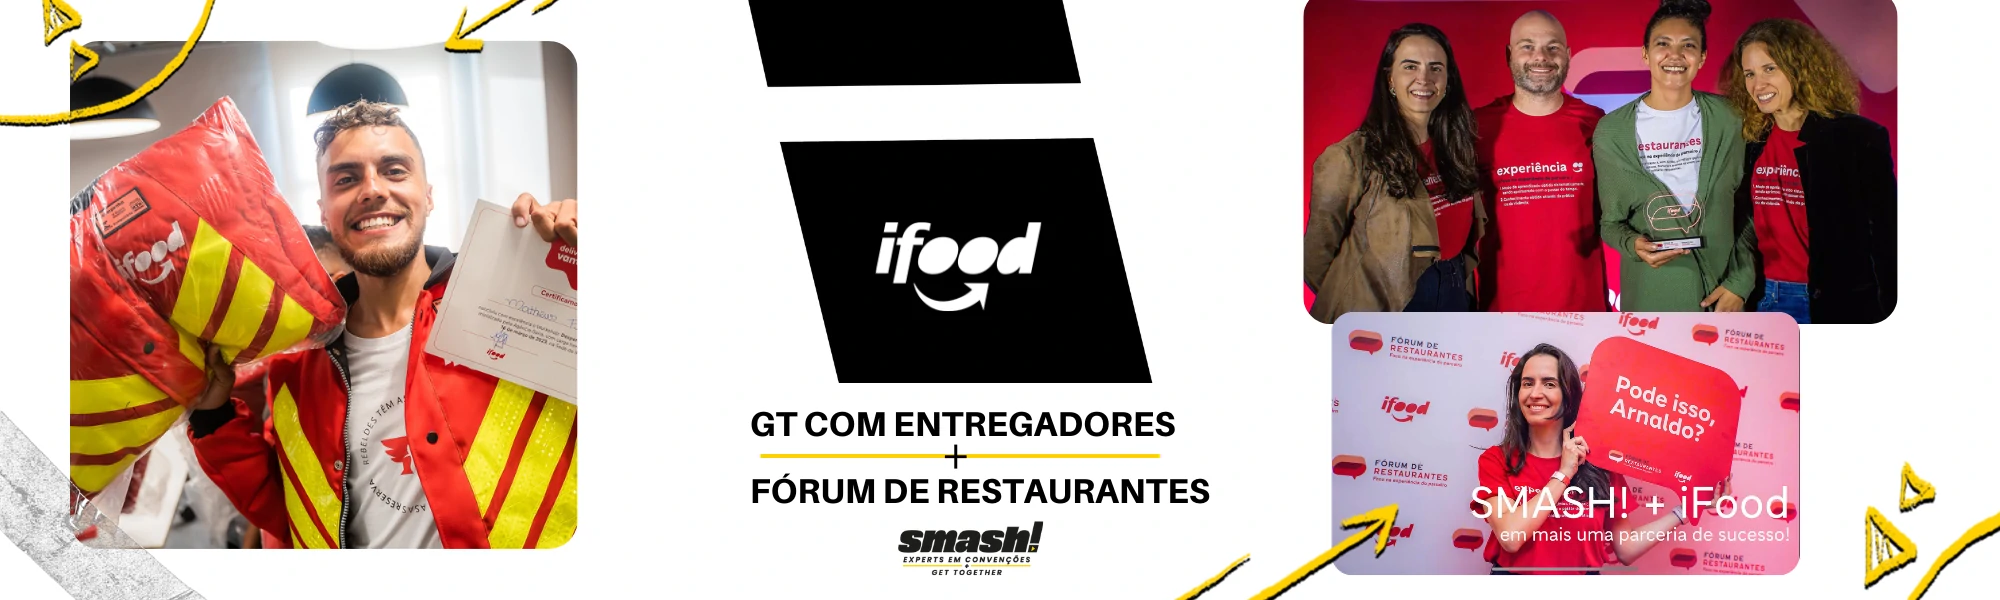 SMASH - Agência Expert em Convenções e Eventos - Image Blog ifood-conectando-entregadores-e-restaurantes